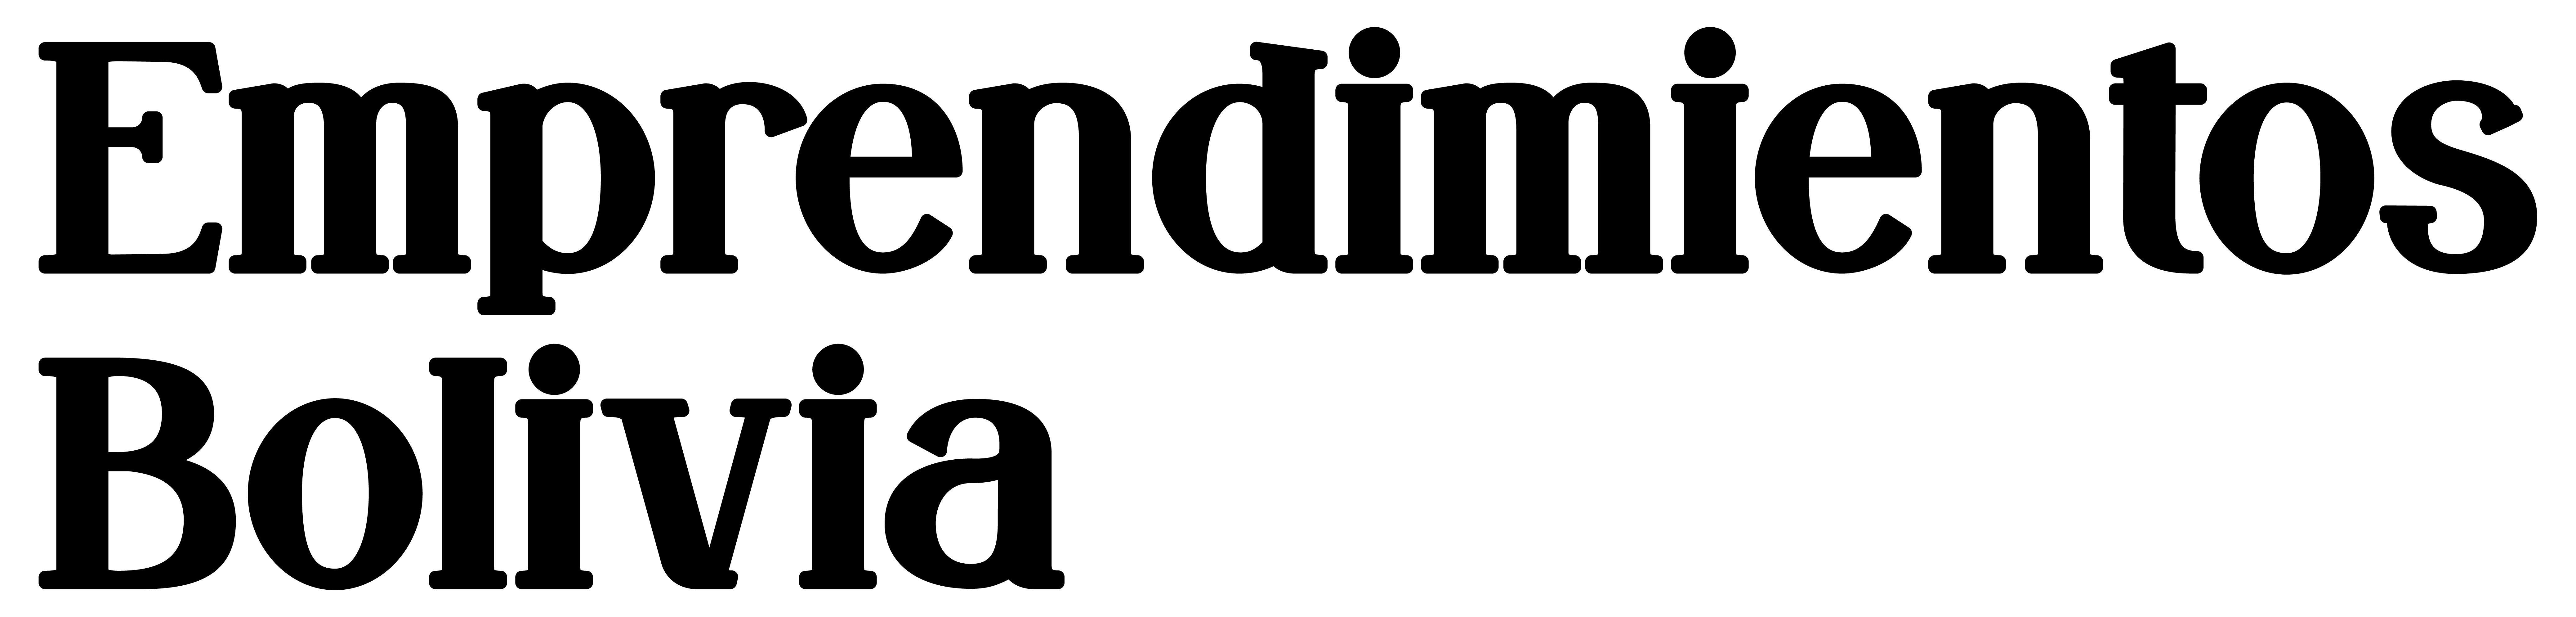 Logo EB BOLD_Mesa de trabajo 1